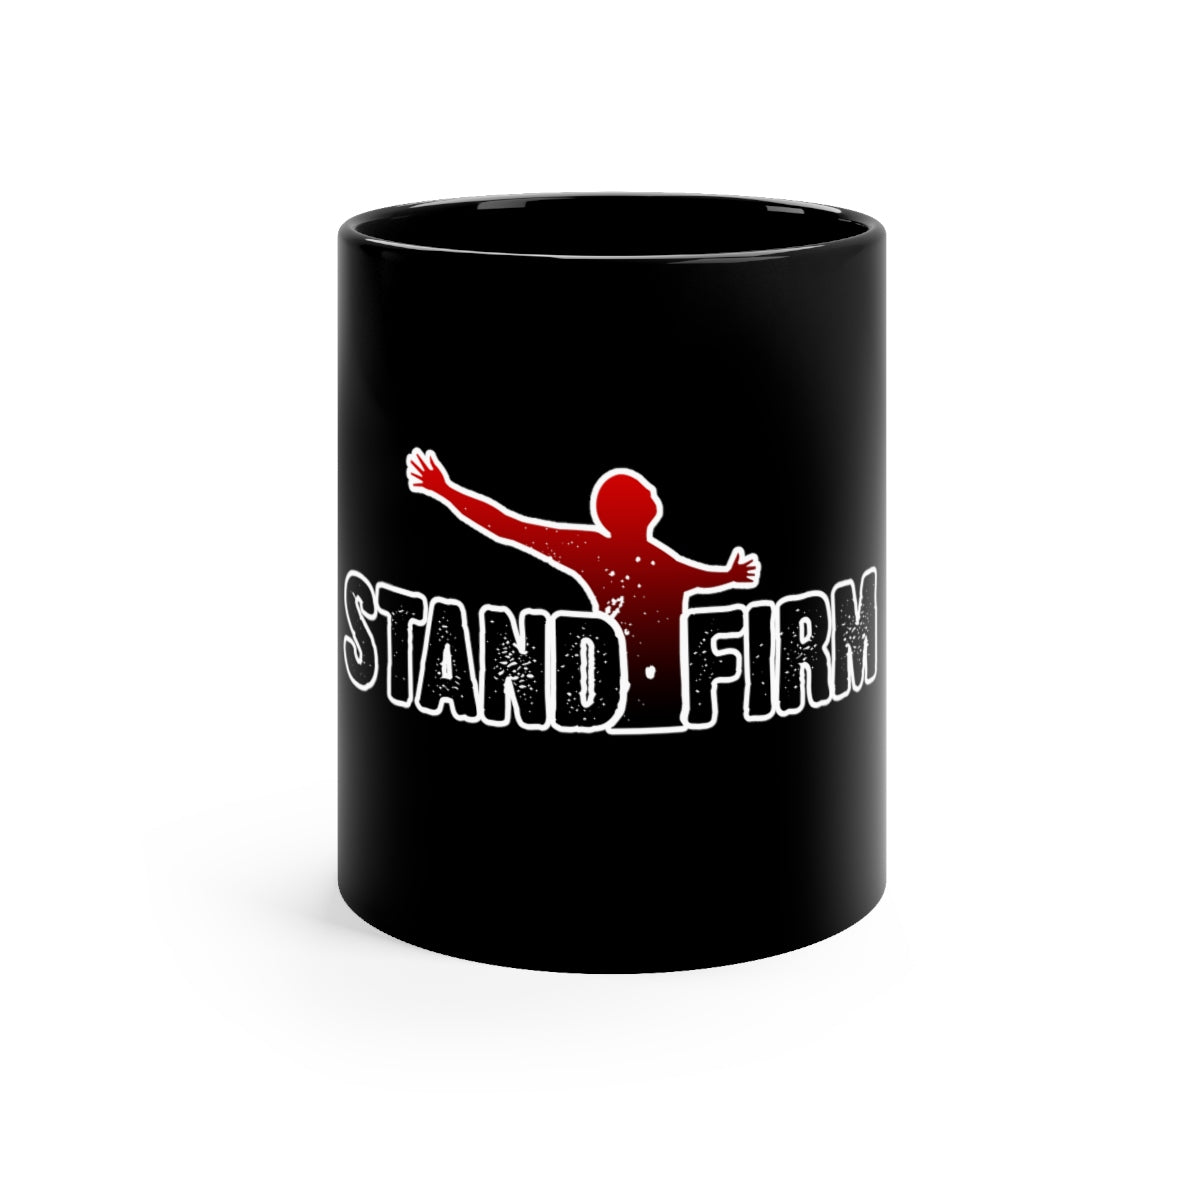 Stand Firm Mug